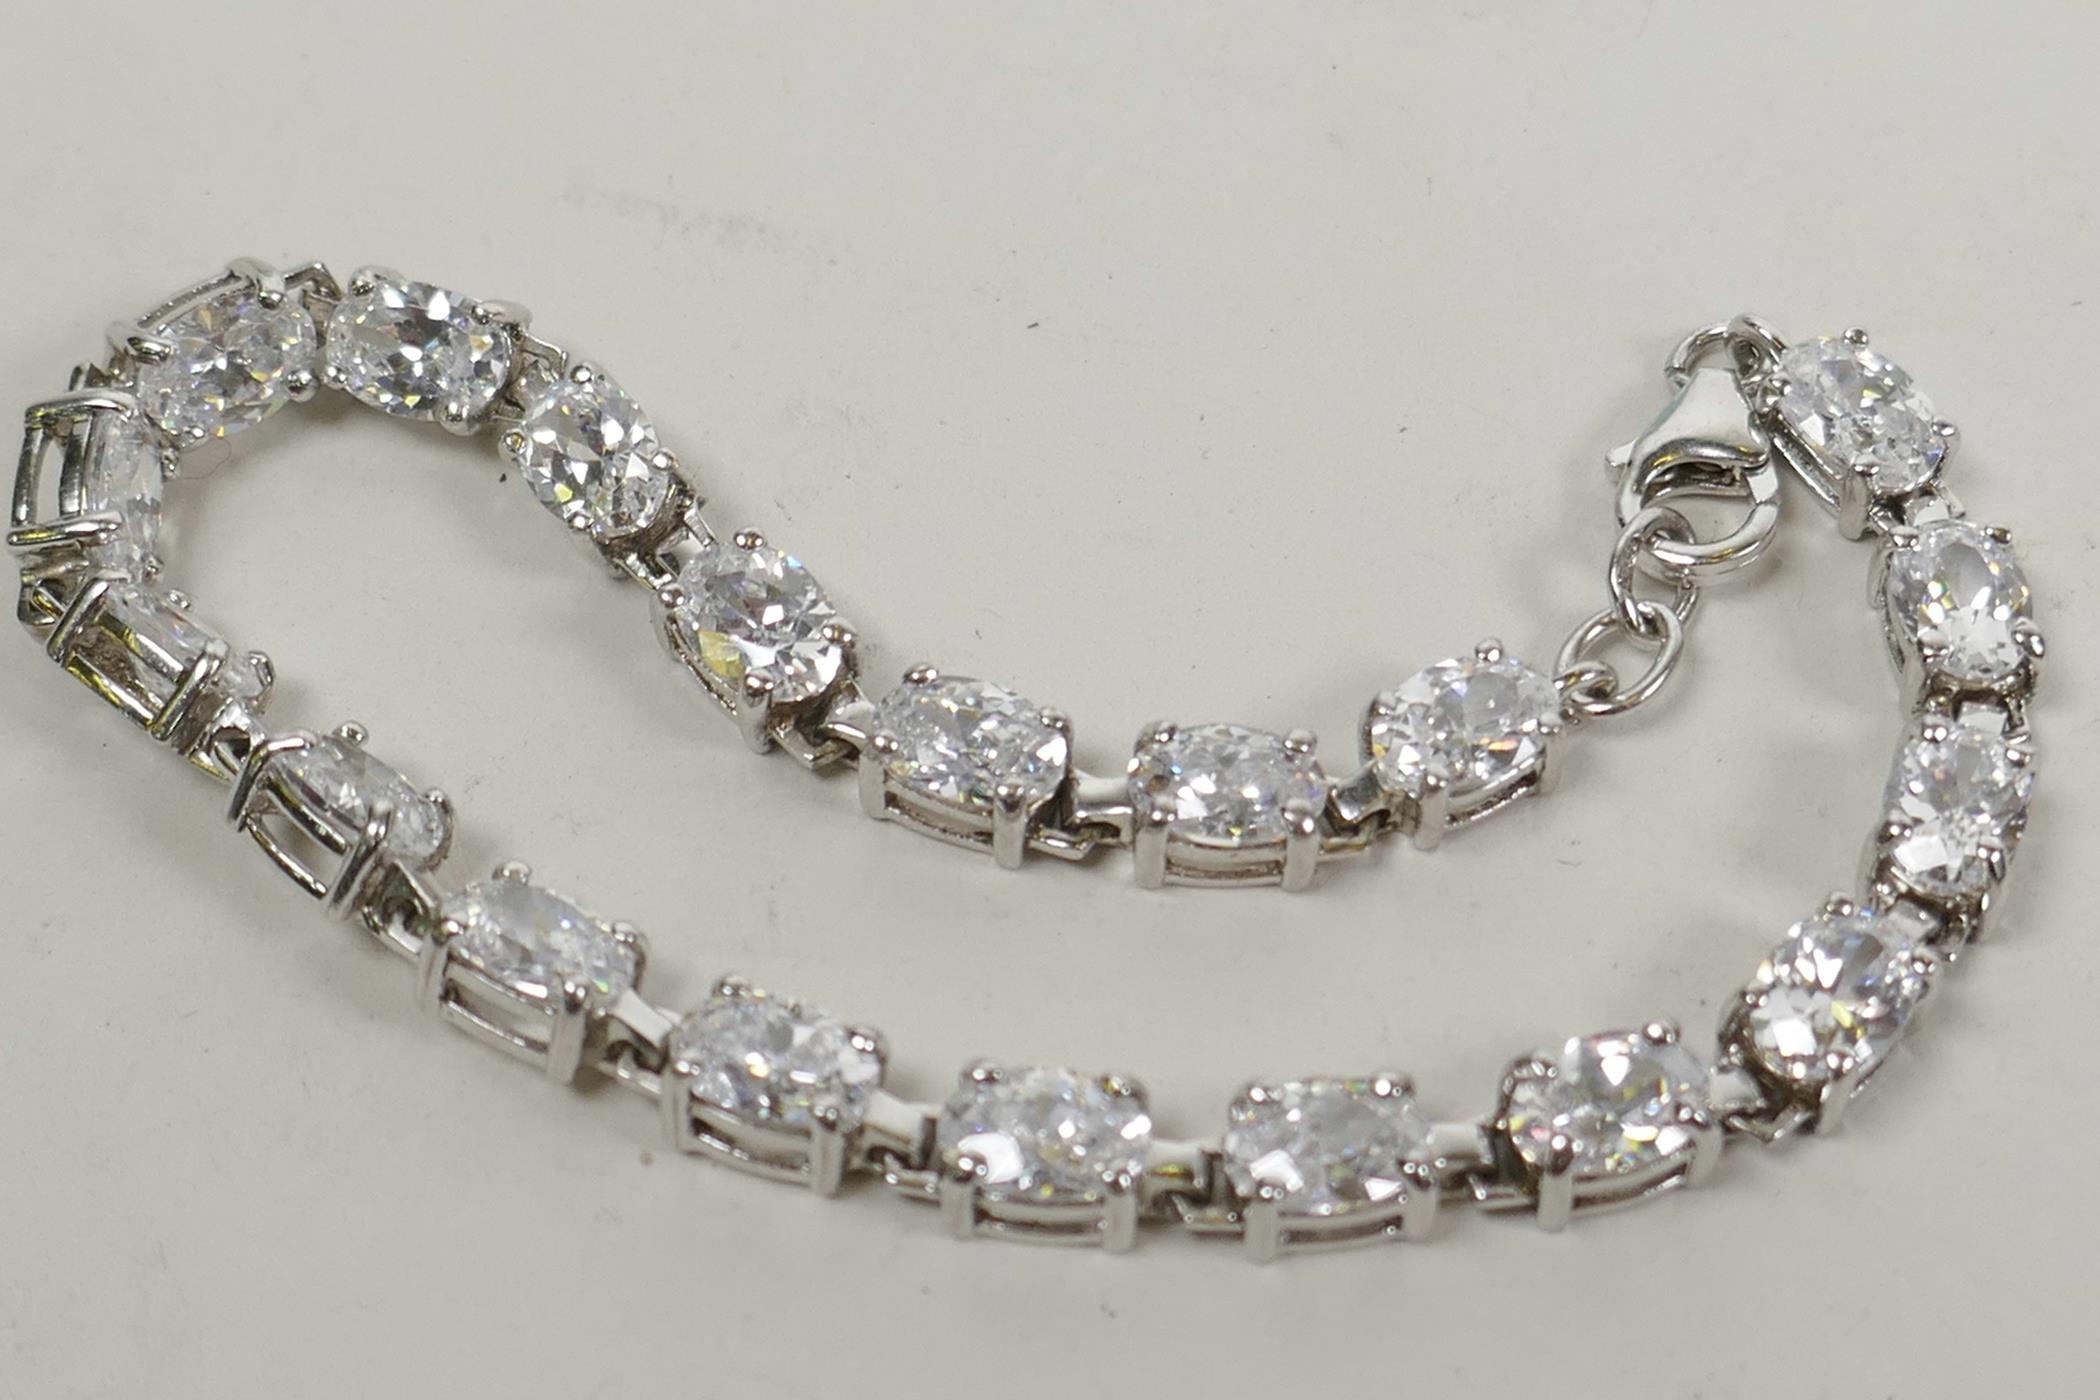 A 925 silver and cubic zirconium tennis bracelet, 8" long